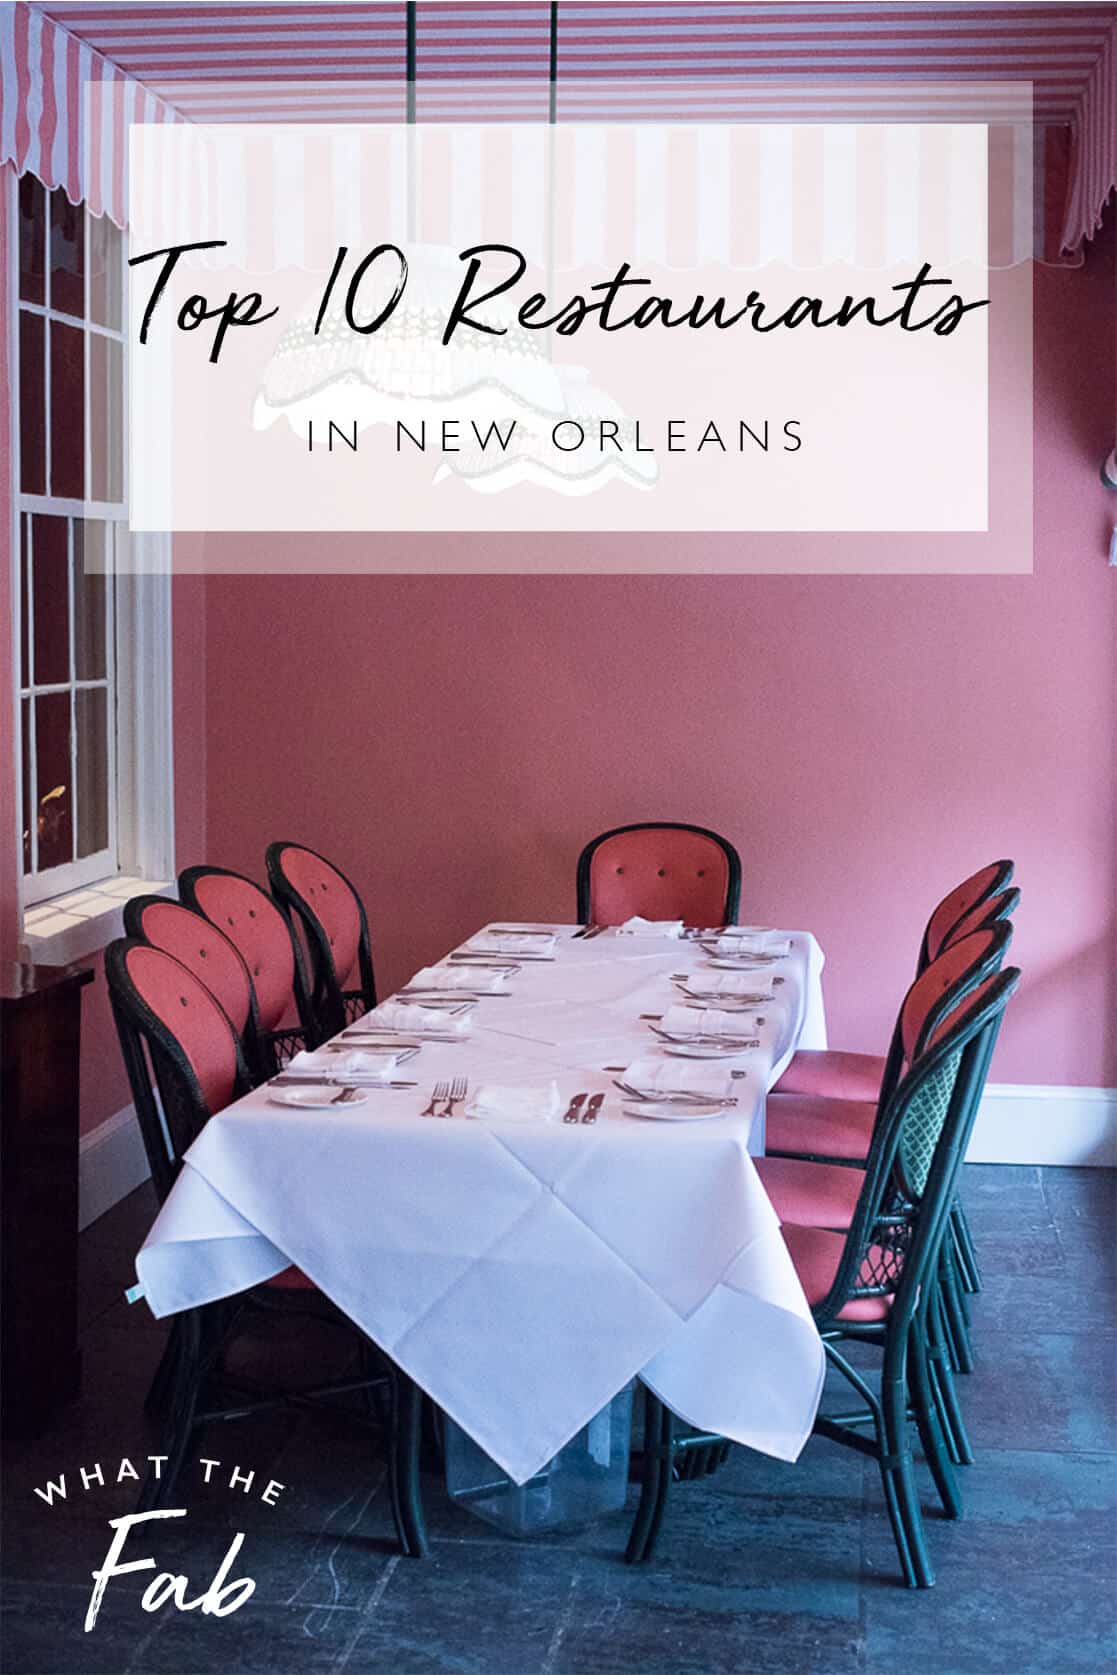 Top 10 Restaurants in New Orleans